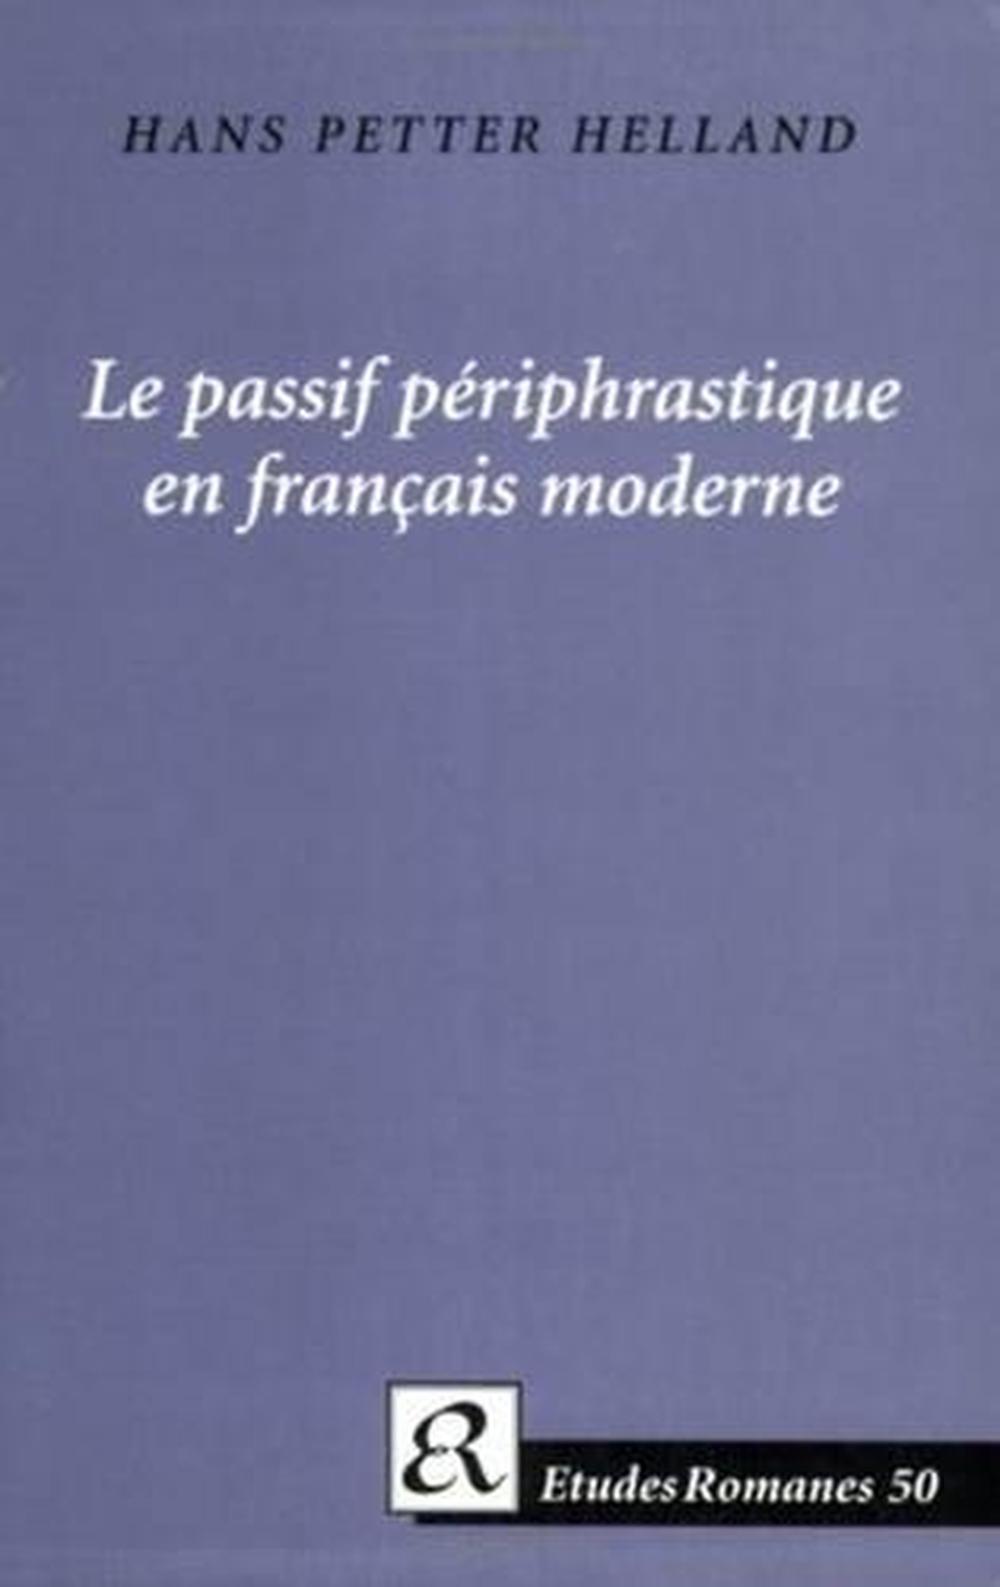 Le passif priphrastique en franais moderne by Hans Petter Helland (English) Pape - Picture 1 of 1